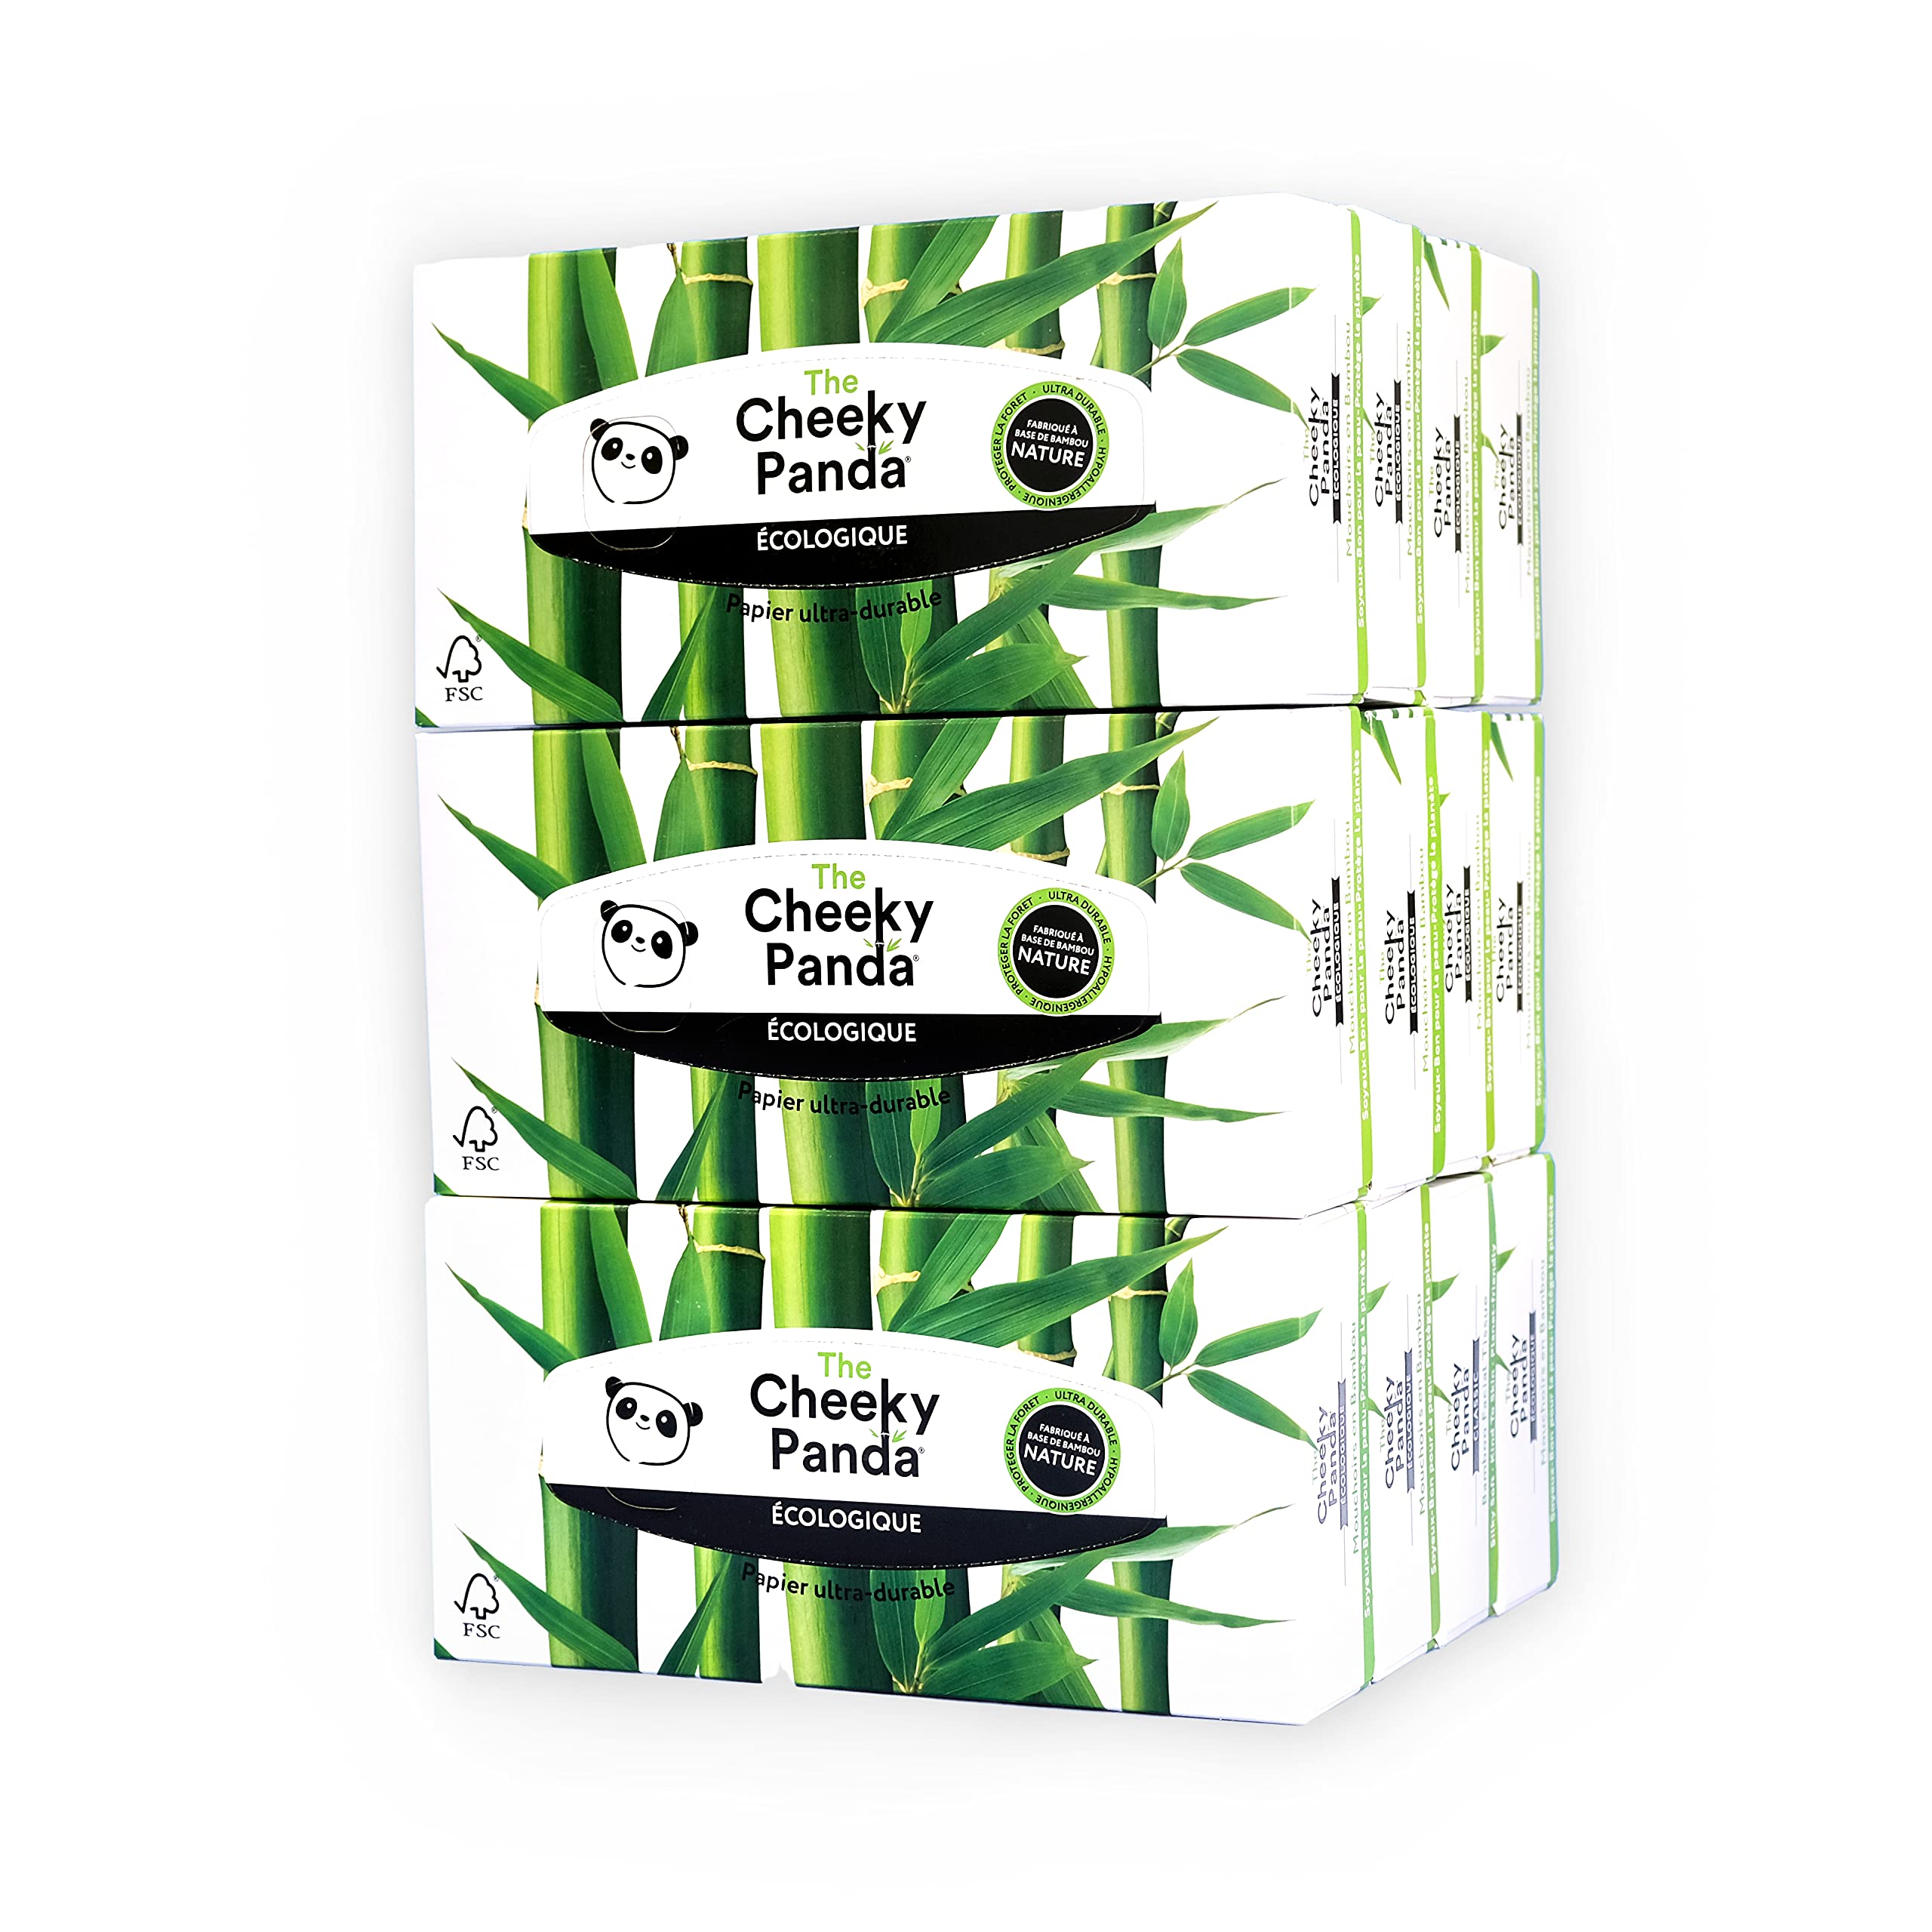 The Cheeky Panda Taschentücher aus Bambus